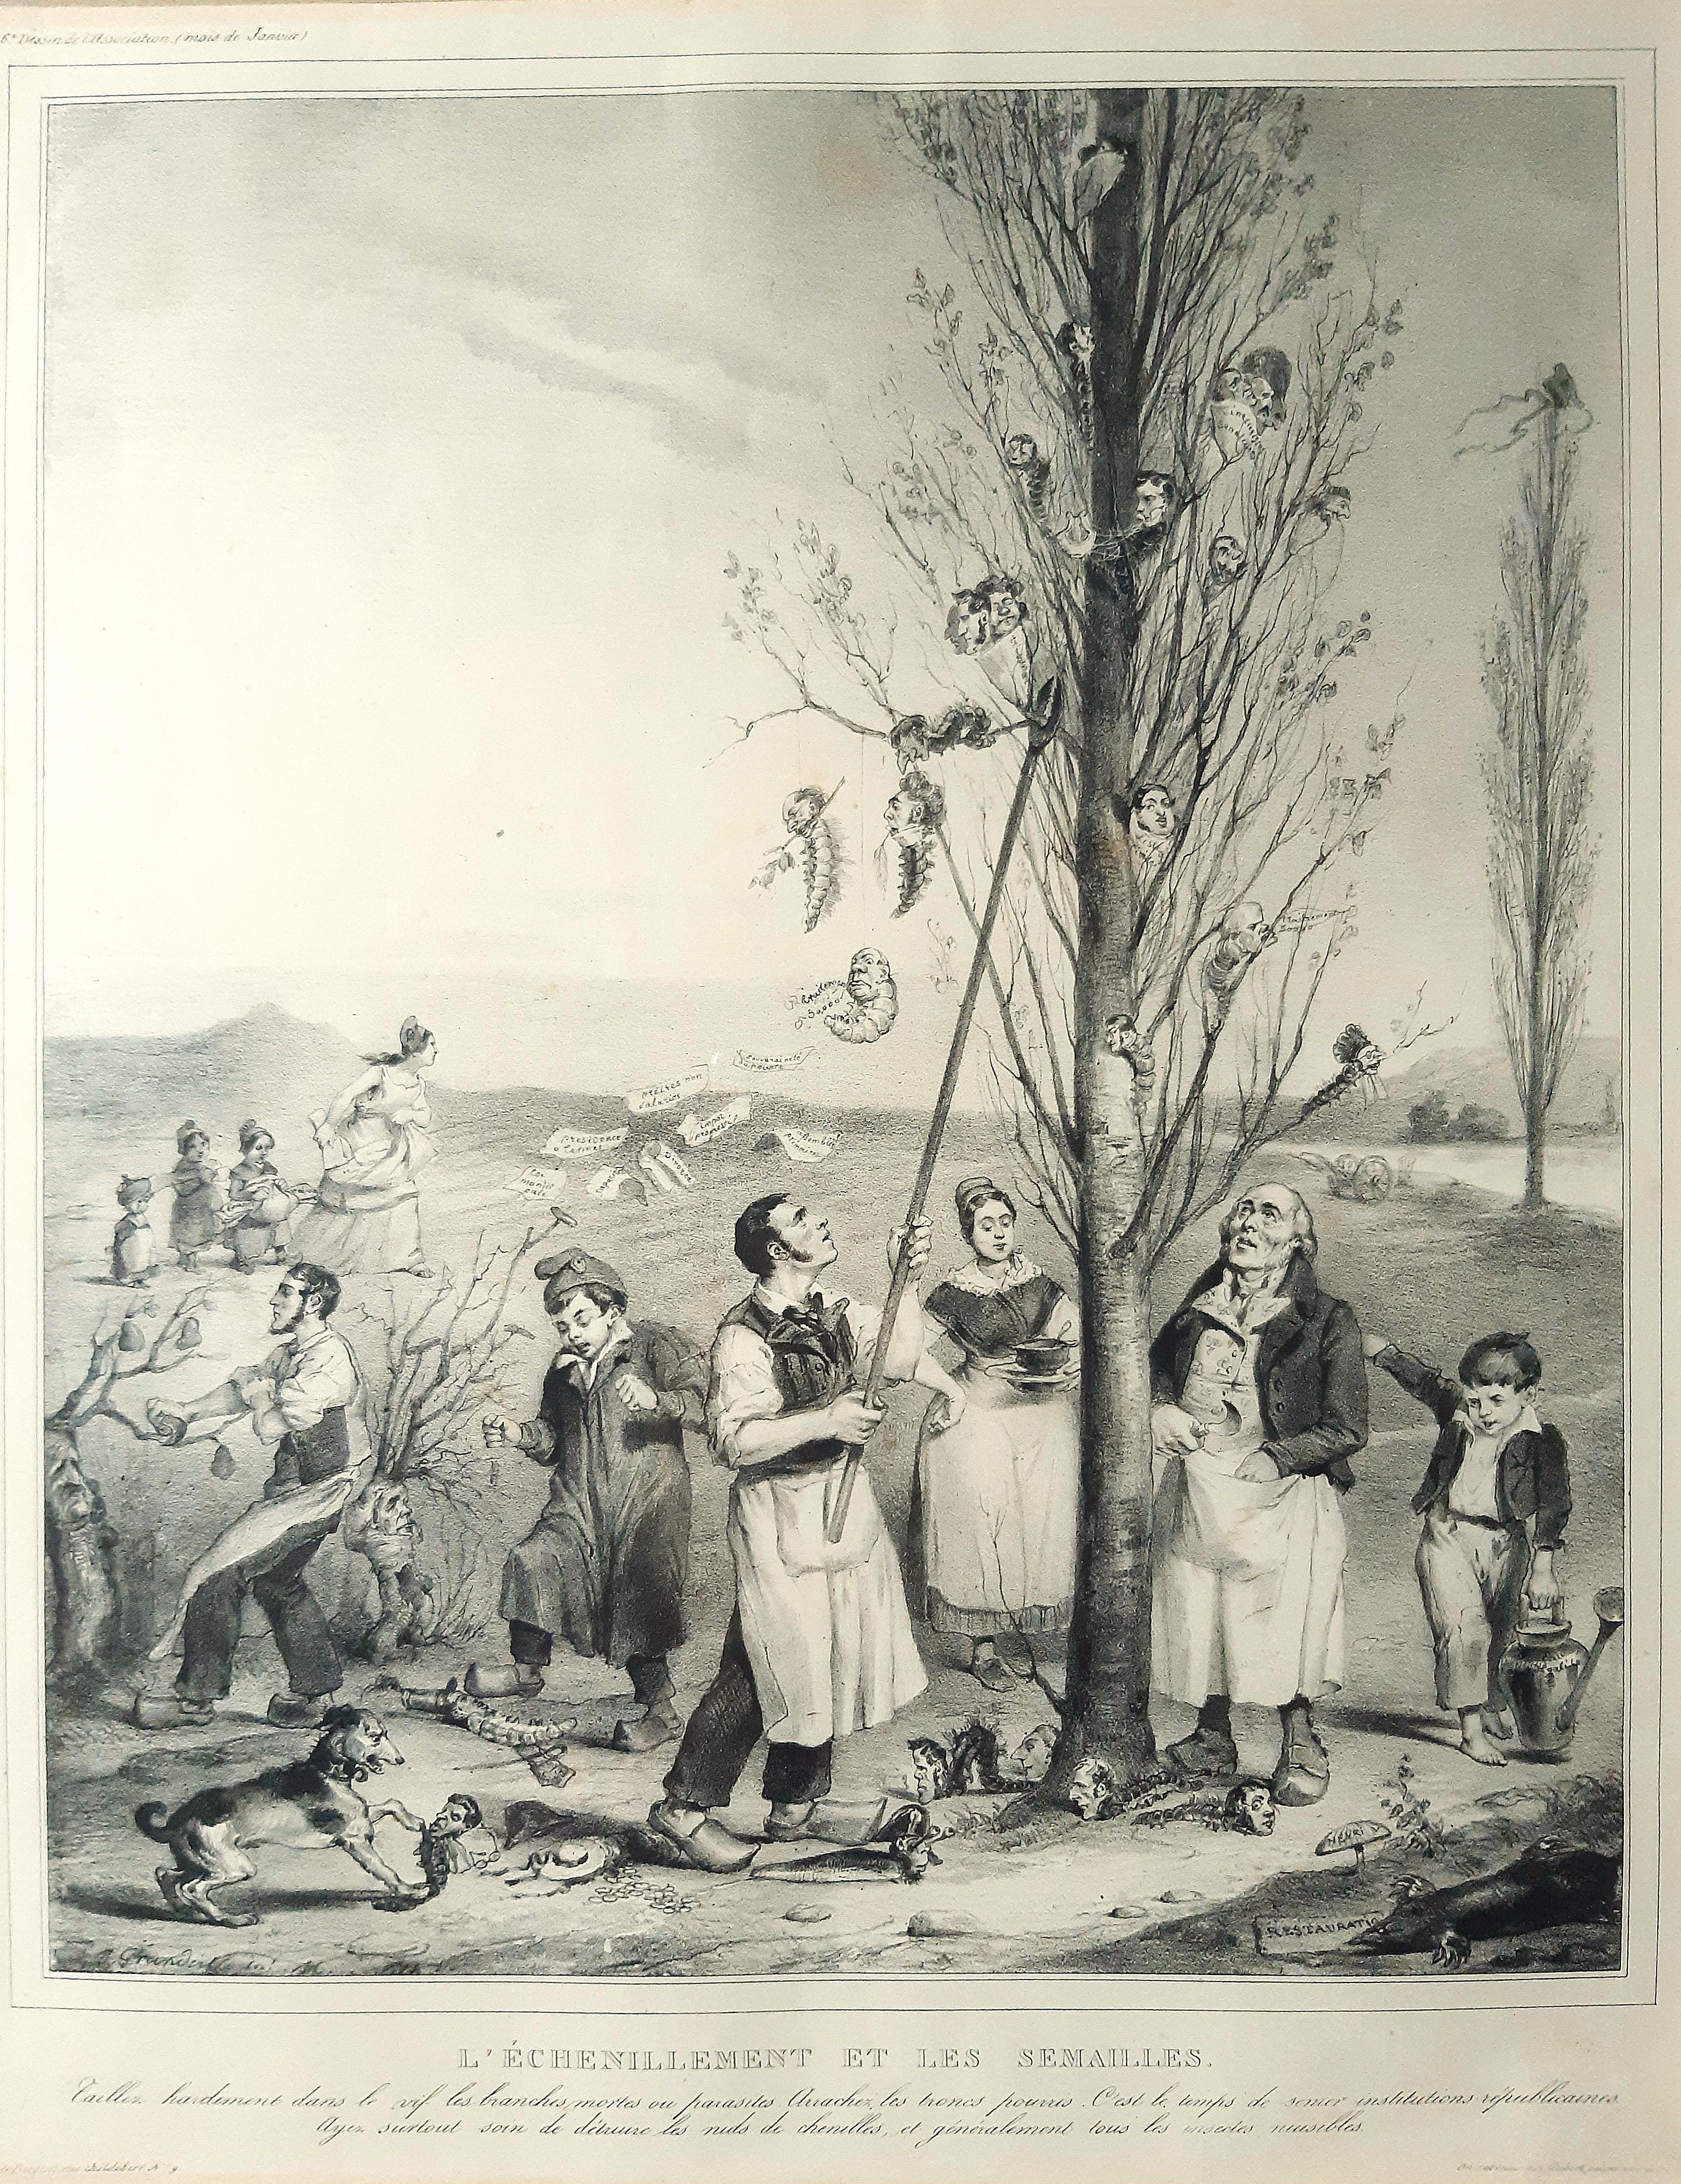 L’échénillement et les Sémaille  - Lithograph by J.J. Grandville - 1833